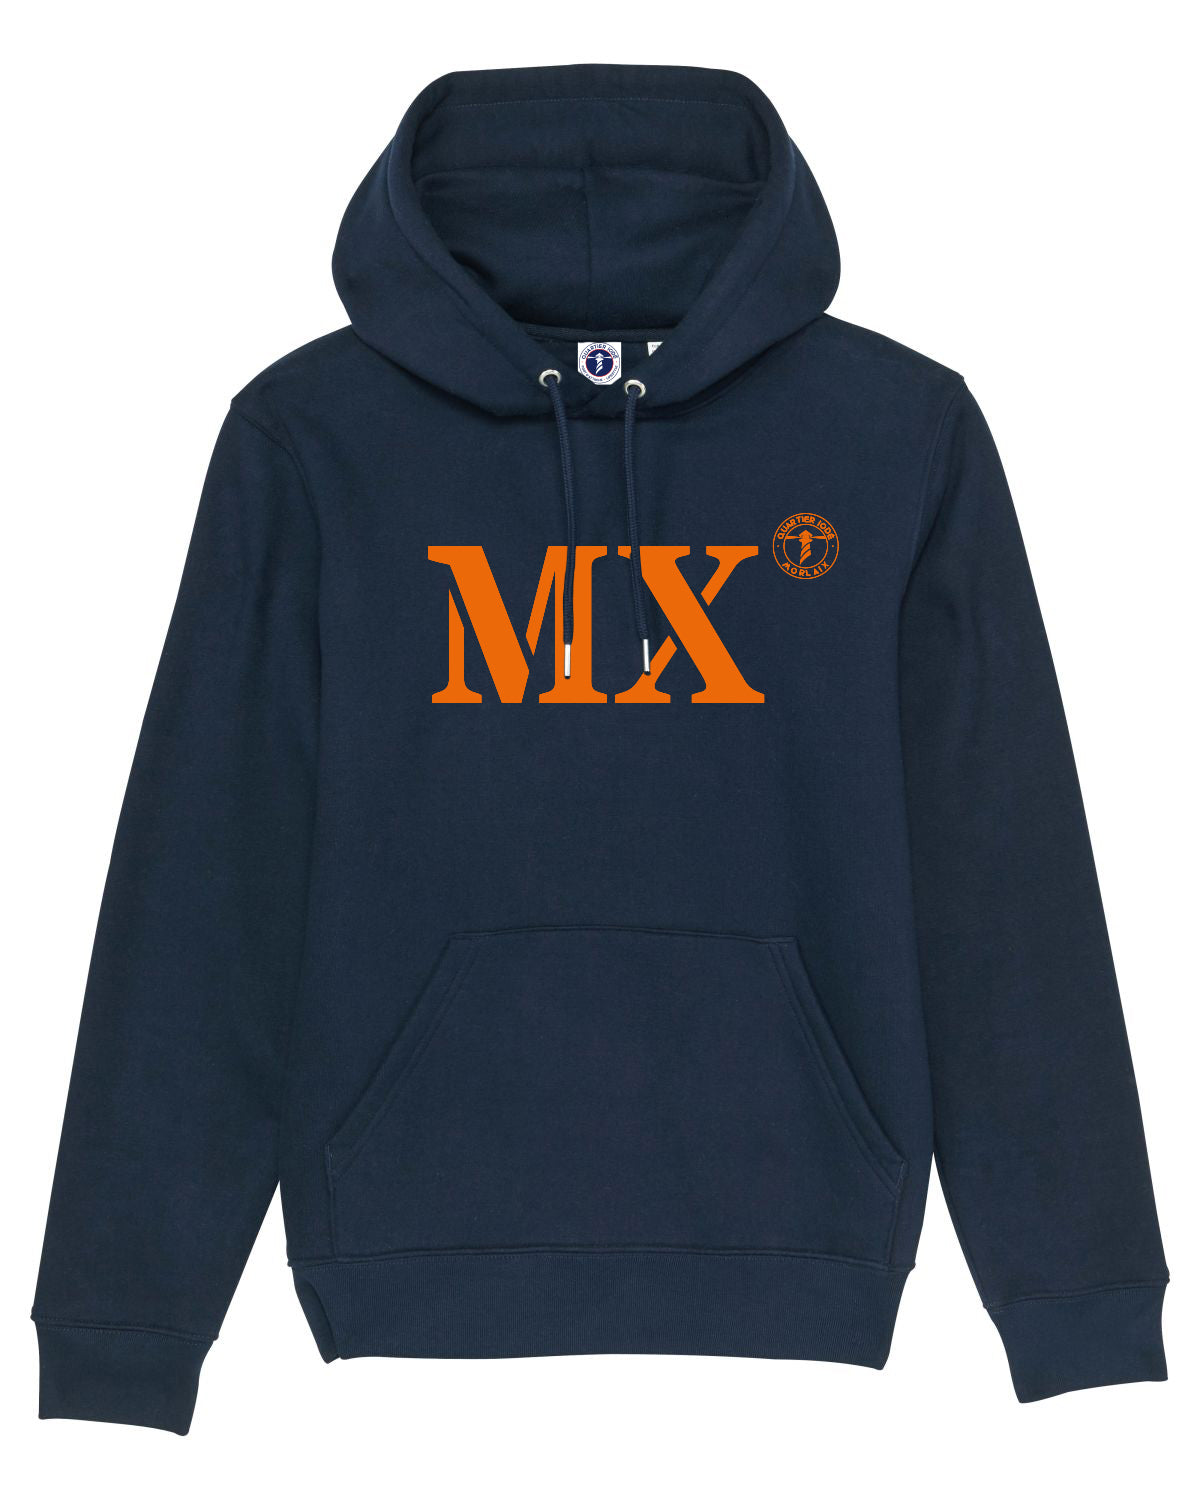 SWEAT CAPUCHE QUARTIER IODE MX MORLAIX, hoodie breton, en coton bio. Idéal pour hommes et femmes., déclinable pour tous les ports de la bretagne. Bleu marine et orange.